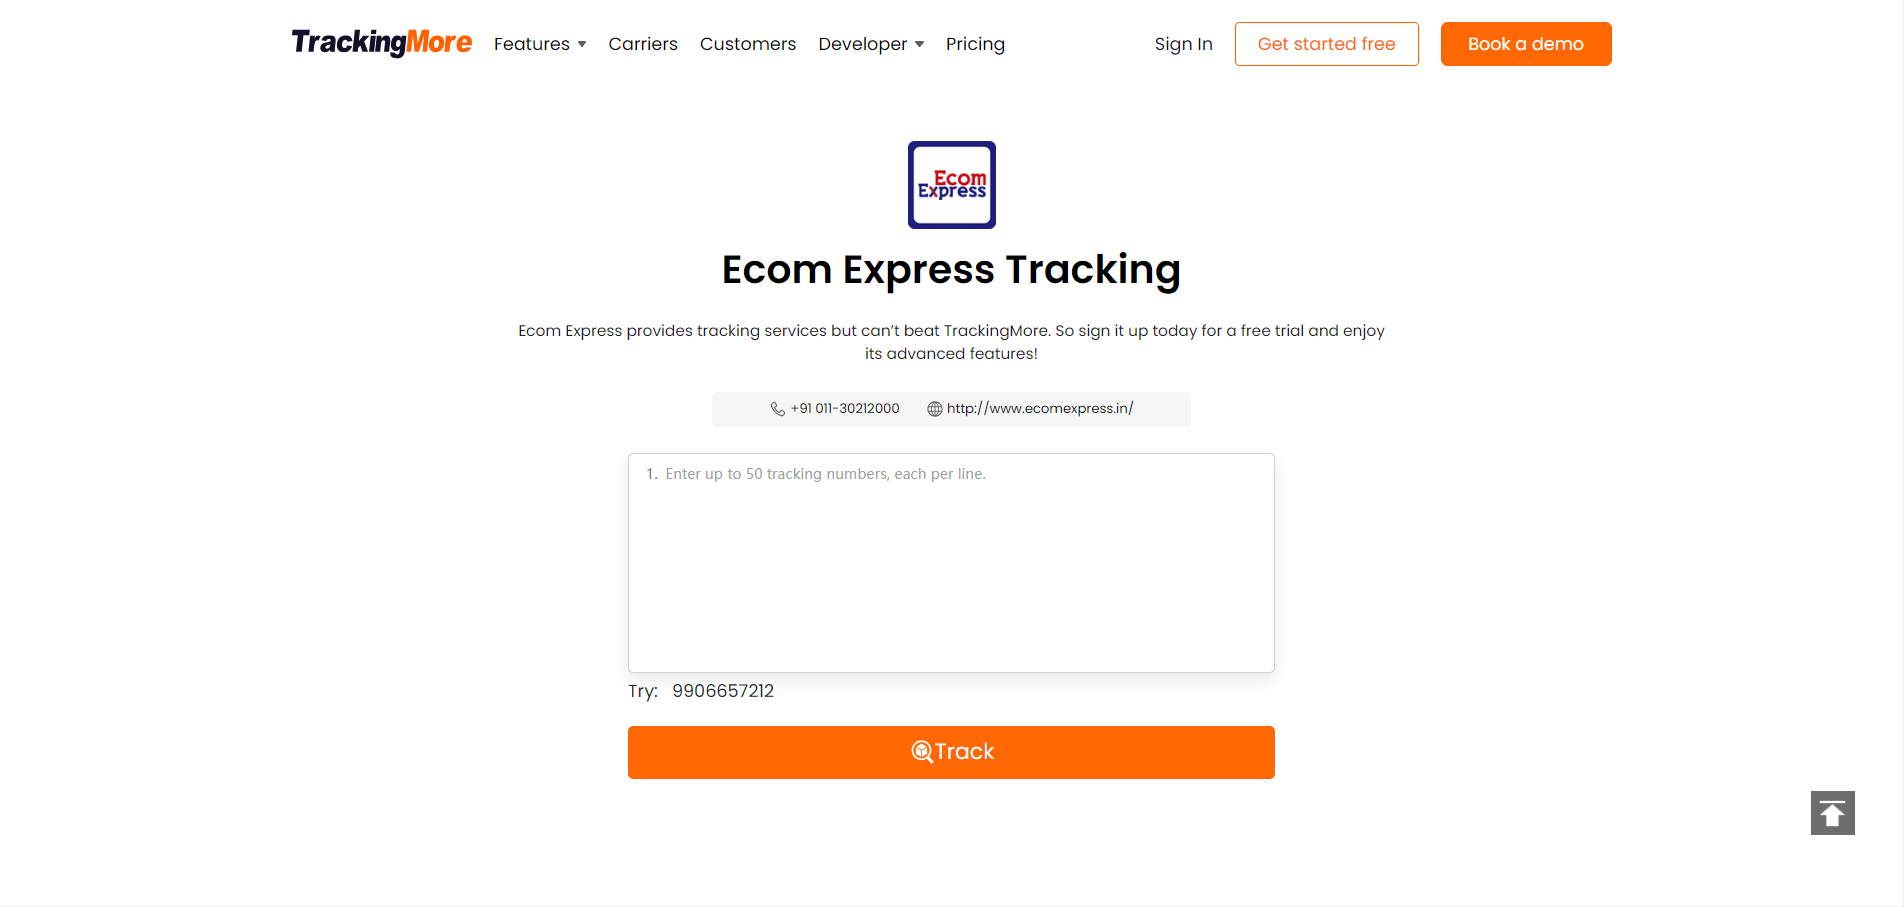 TrackingMore Ecom tracking page